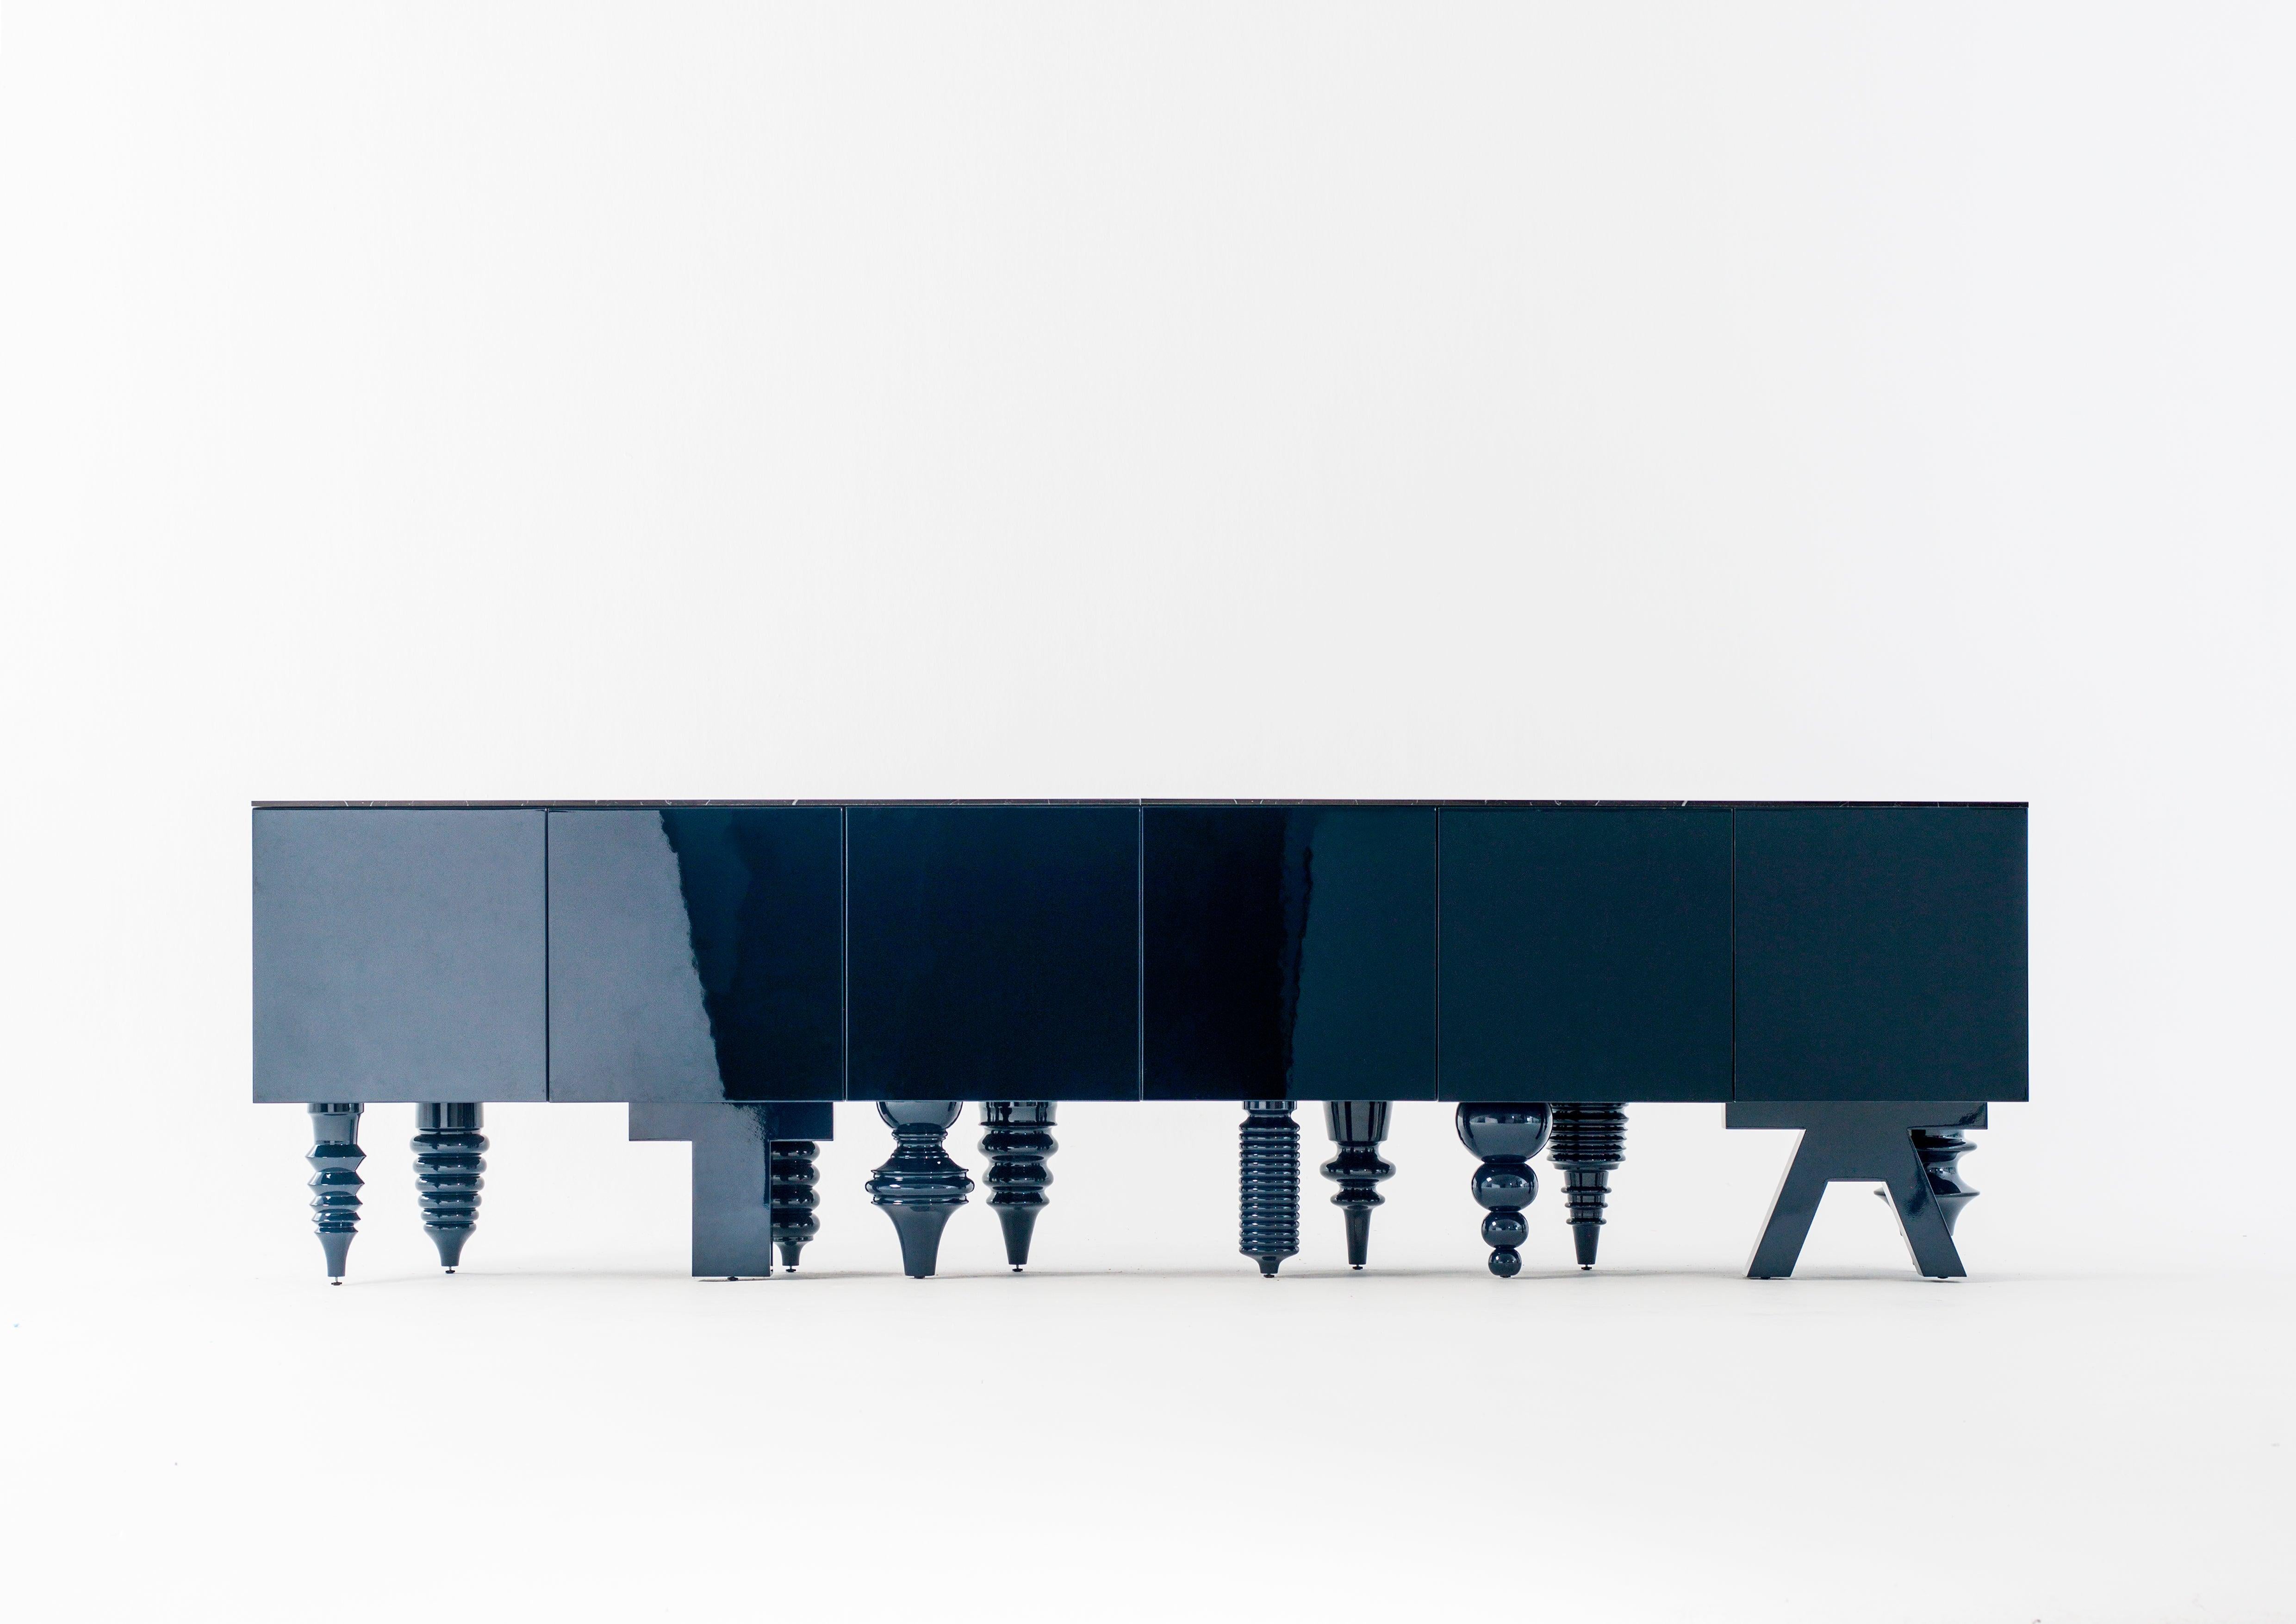 Jaime Hayon Schrank blau Mehrfußschrank entworfen im Jahr 2016 und hergestellt von BD Barcelona.

Ein modulares, vielseitiges und vielbeiniges Möbel. Er ist in einem Dutzend verschiedener Designs erhältlich, die von unterschiedlichen Stilrichtungen